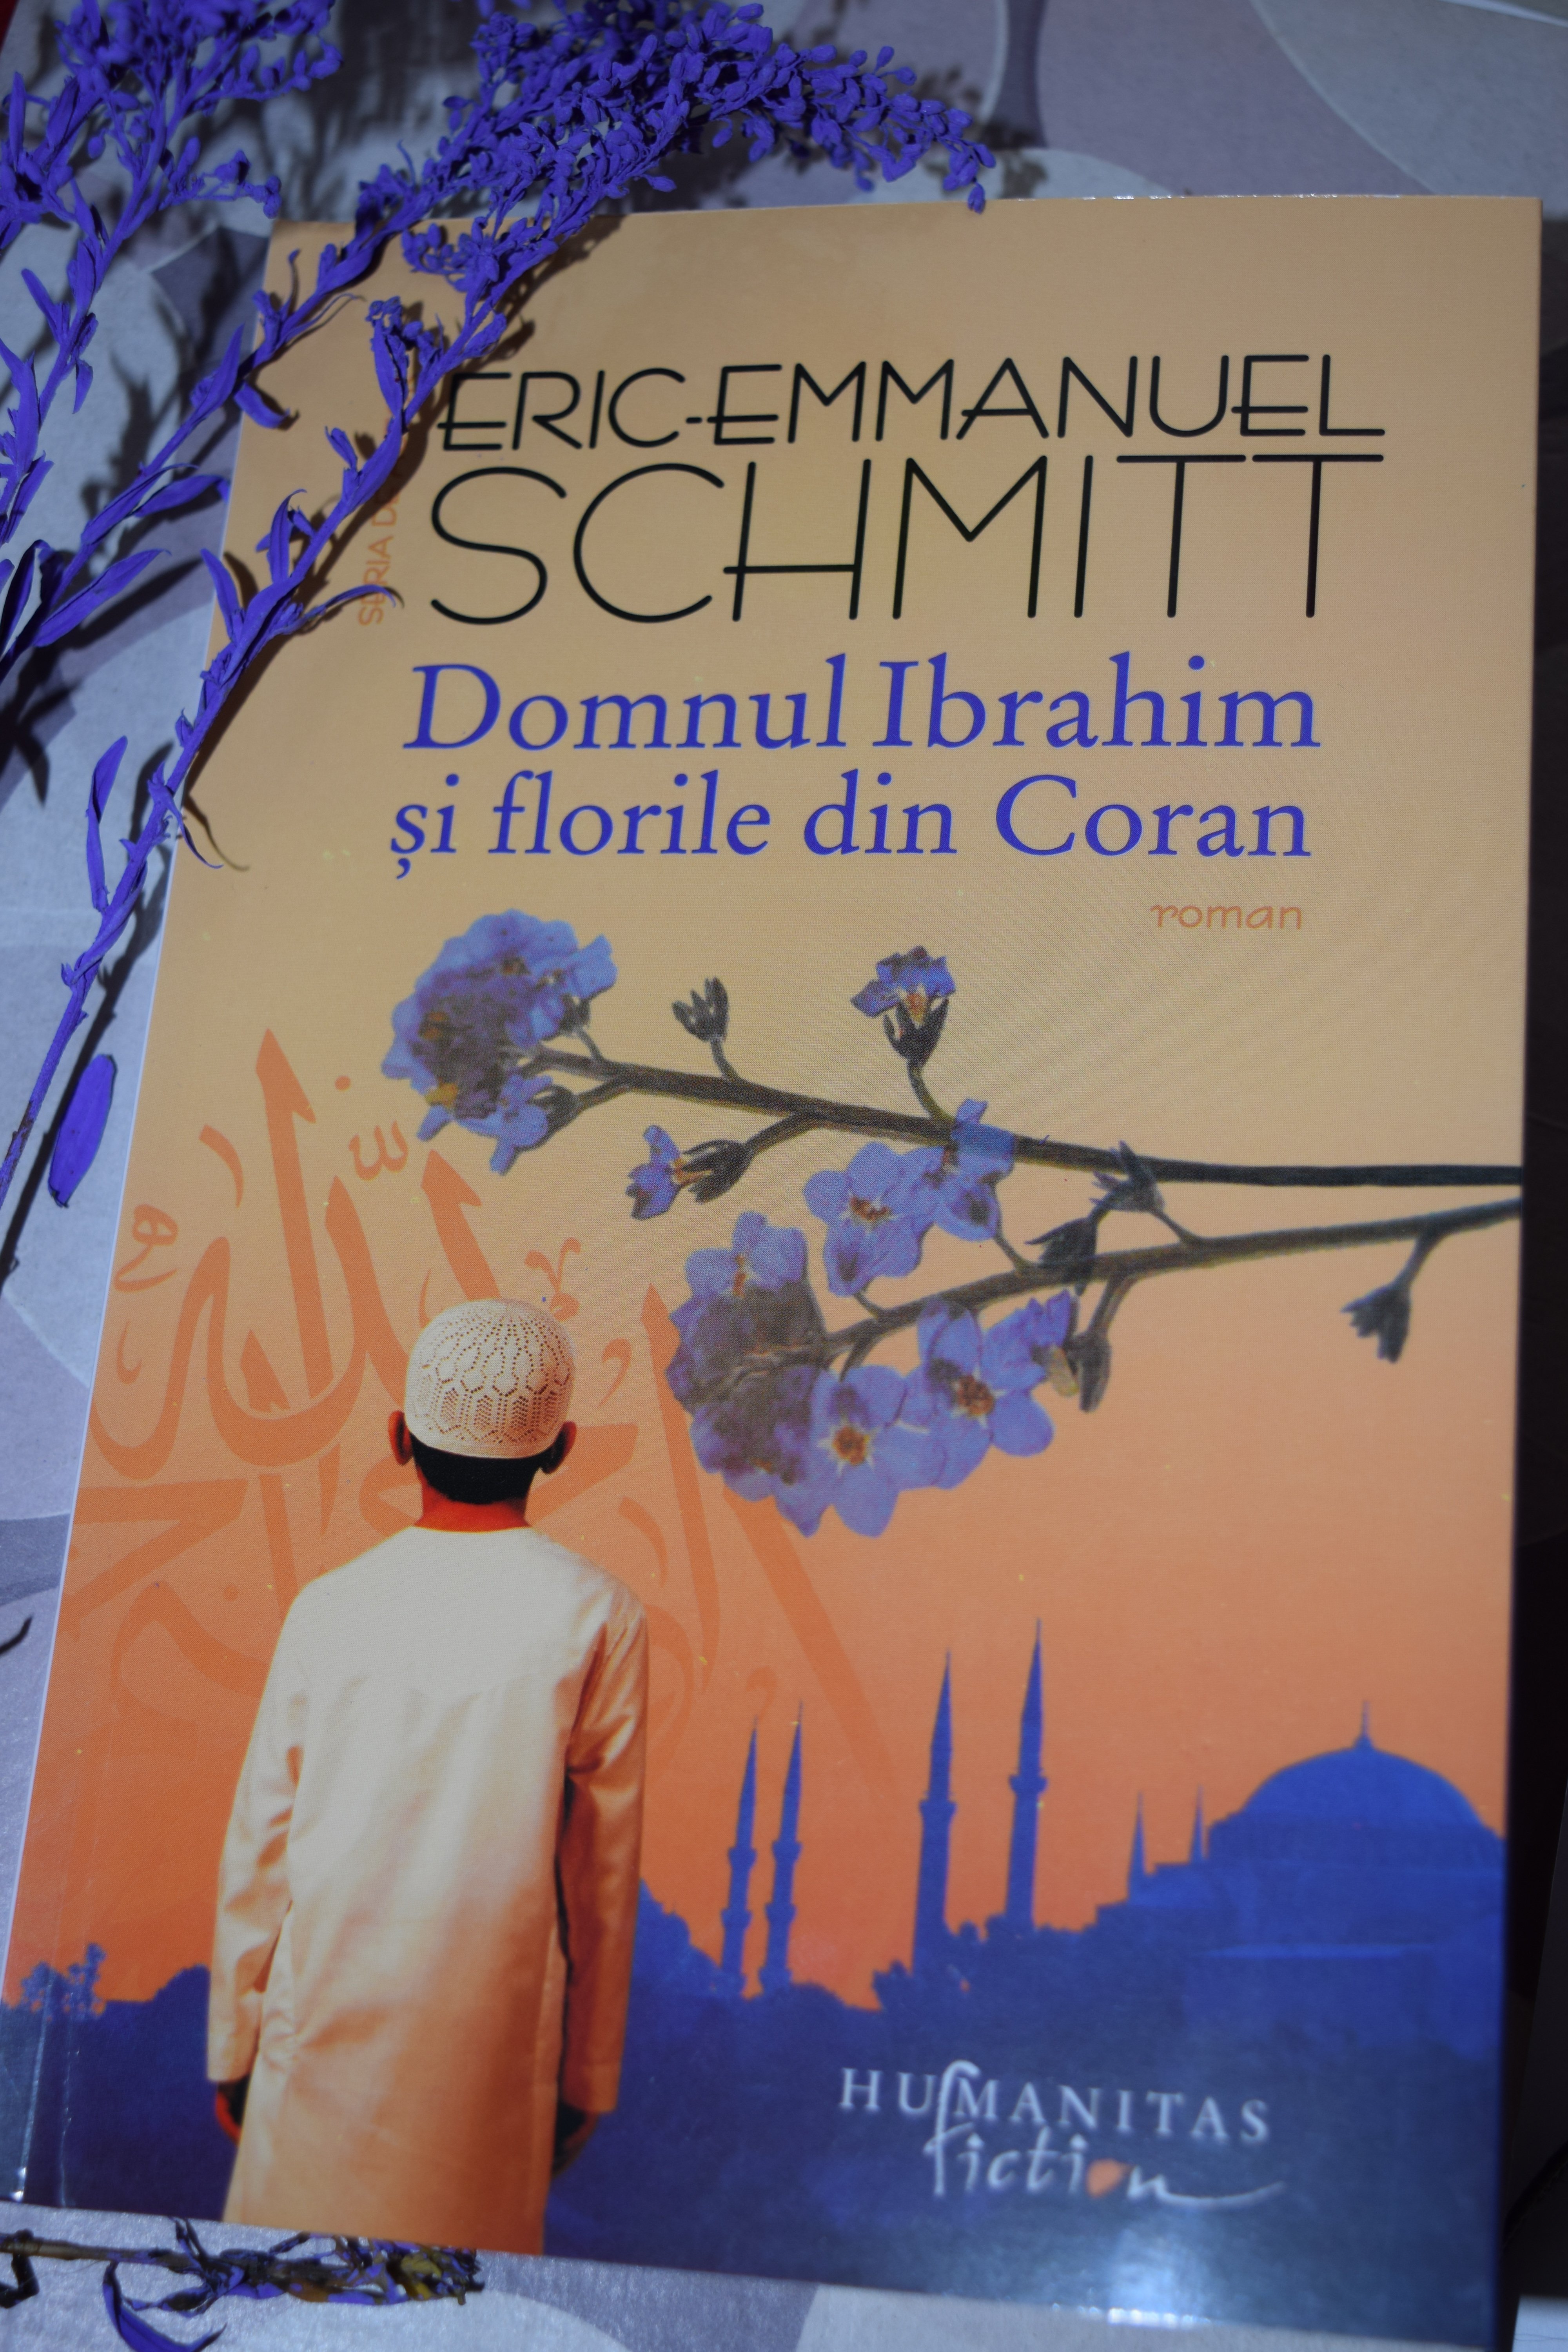 Domnul Ibrahim și florile din Coran de Eric-Emmanuel Schmitt | The Search For More